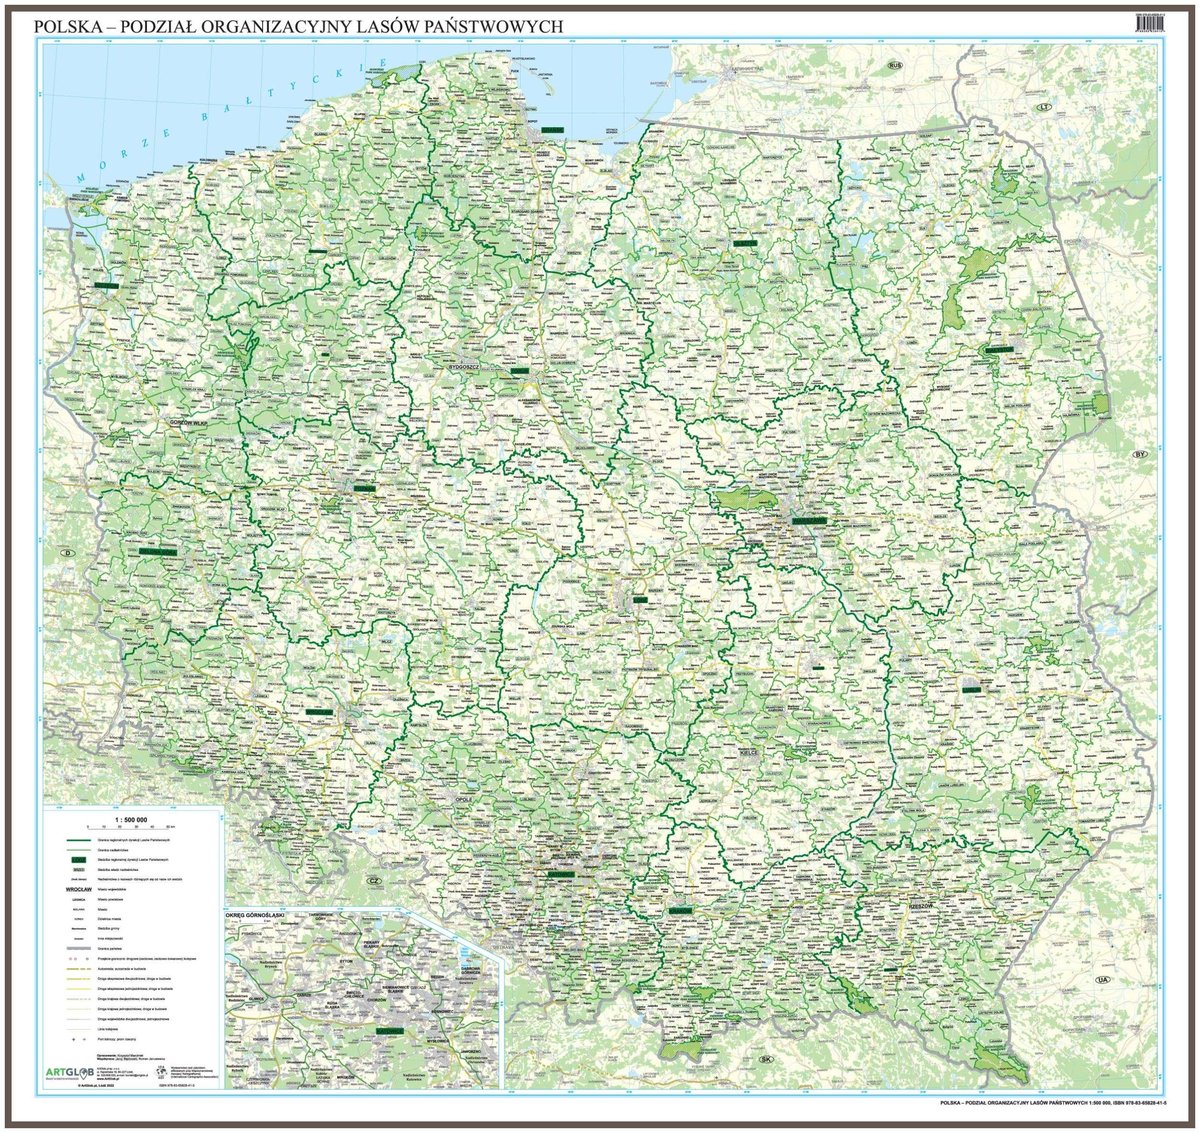 Zdjęcia - Gra planszowa Artglob Polska - podział organizacyjny Lasów Państwowych mapa ścienna na podkładzi 